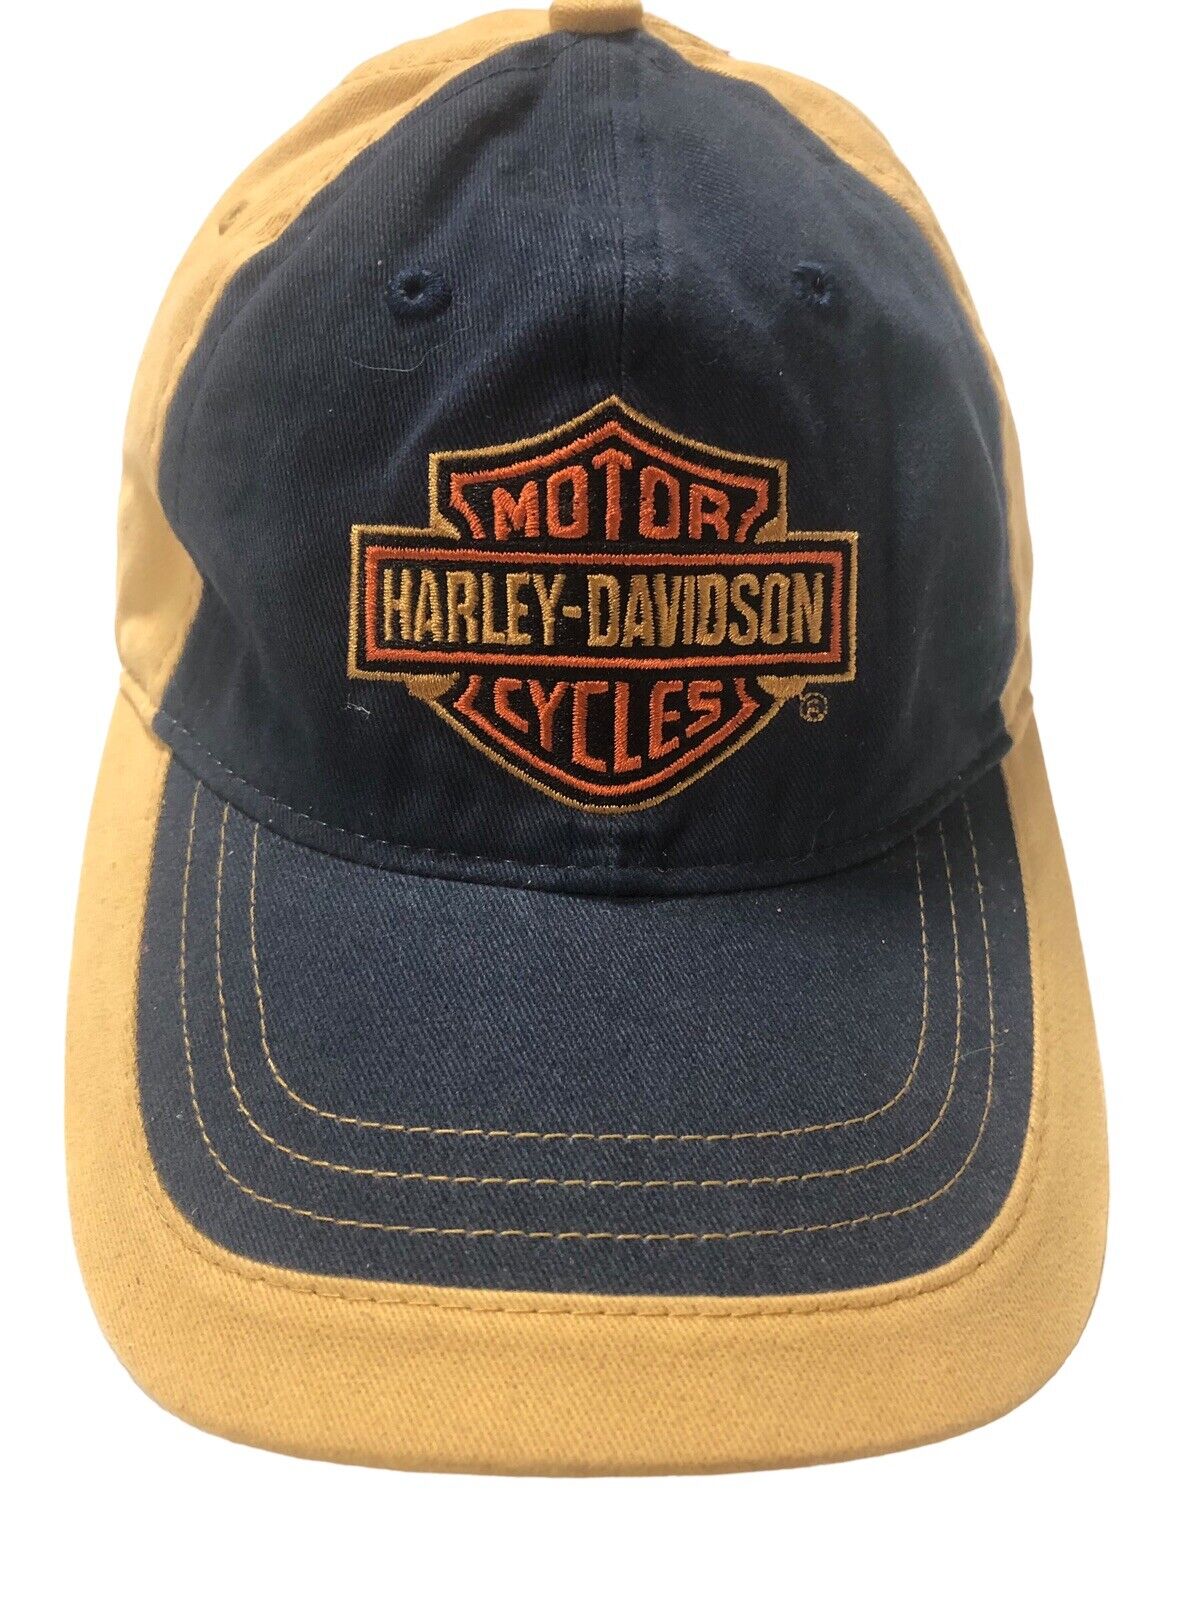 Vintage Harley Davidson Motorcycle Adjustable Hat Cap Excellent